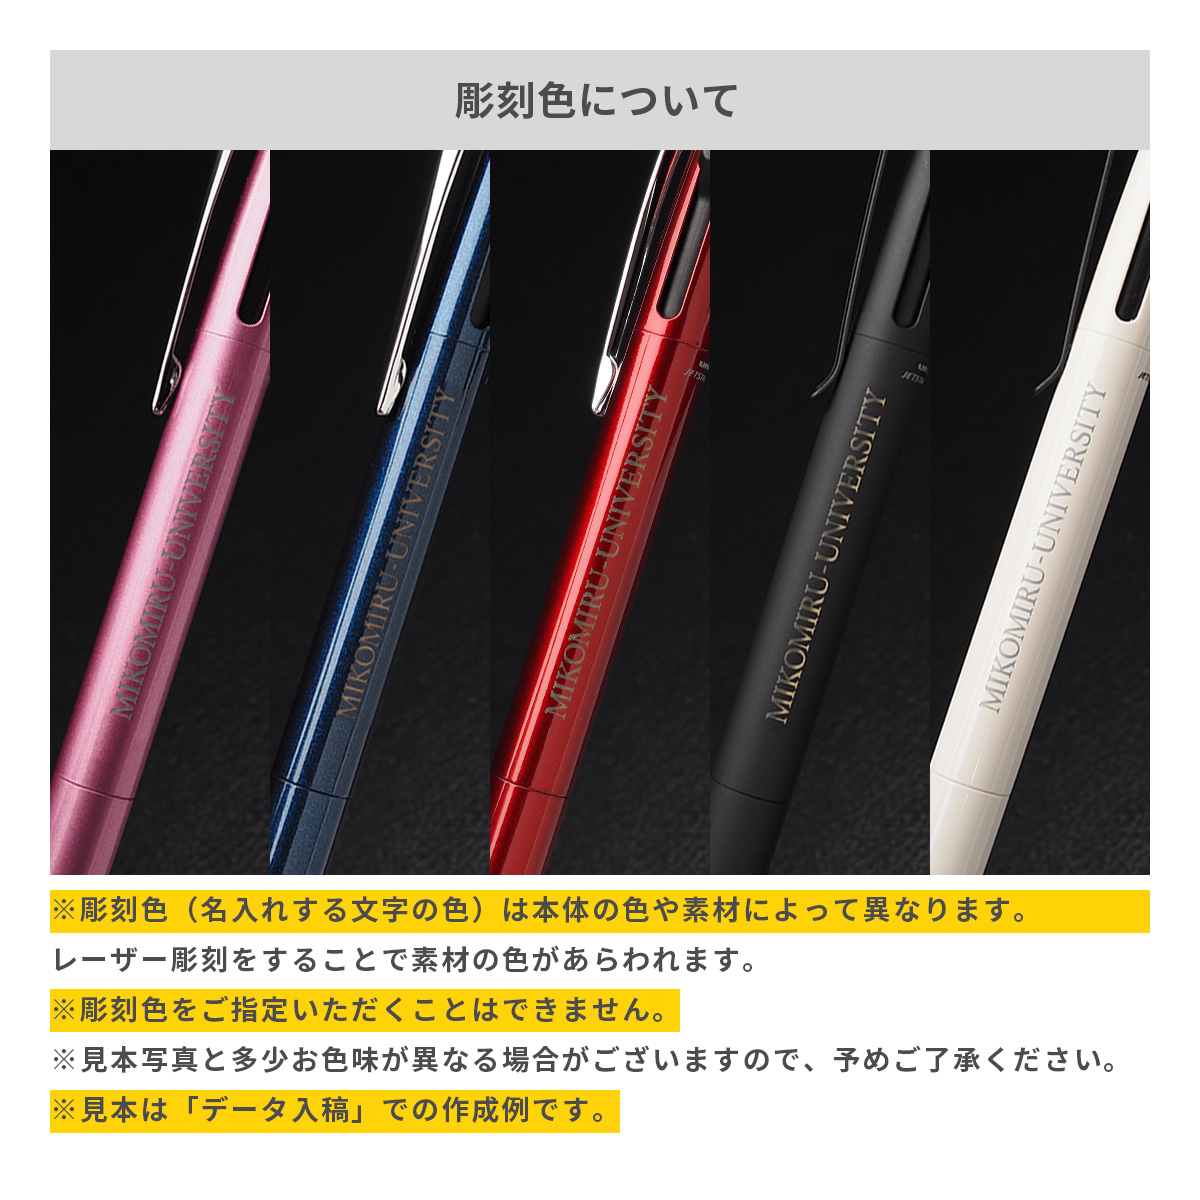 【短納期】三菱鉛筆 ジェットストリーム プライム 3色ボールペン 0.5mm【名入れボールペン / レーザー彫刻】 画像9